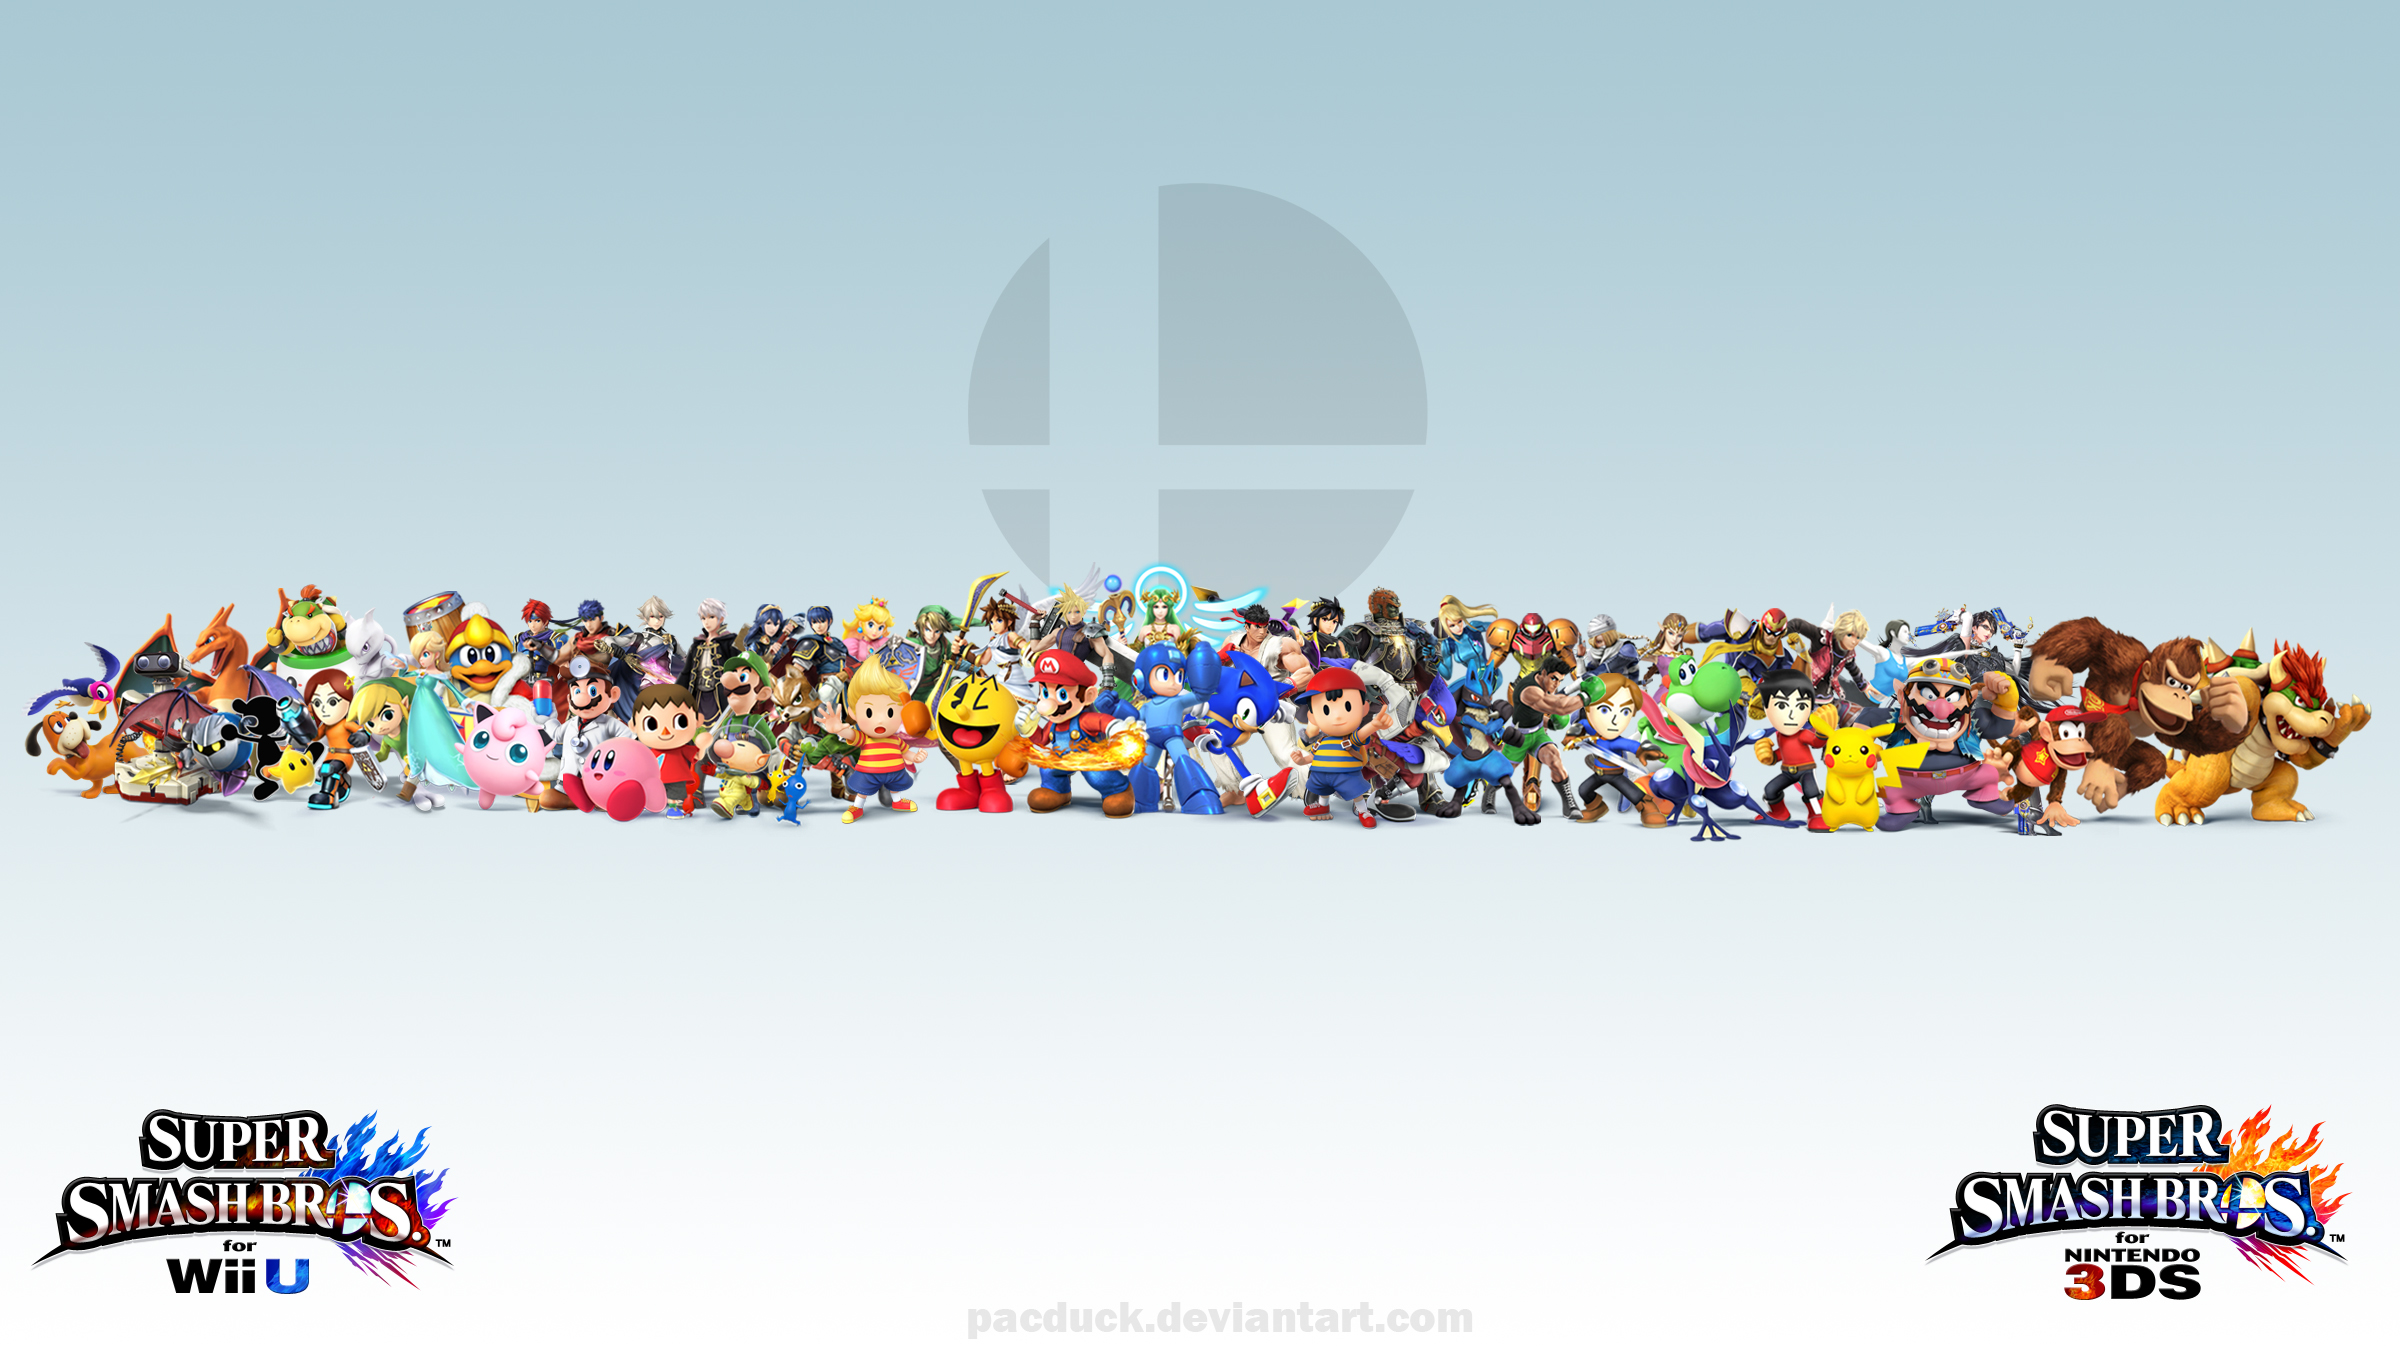 Super Smash Bros. for Nintendo 3DS / Wii U: Mewtwo